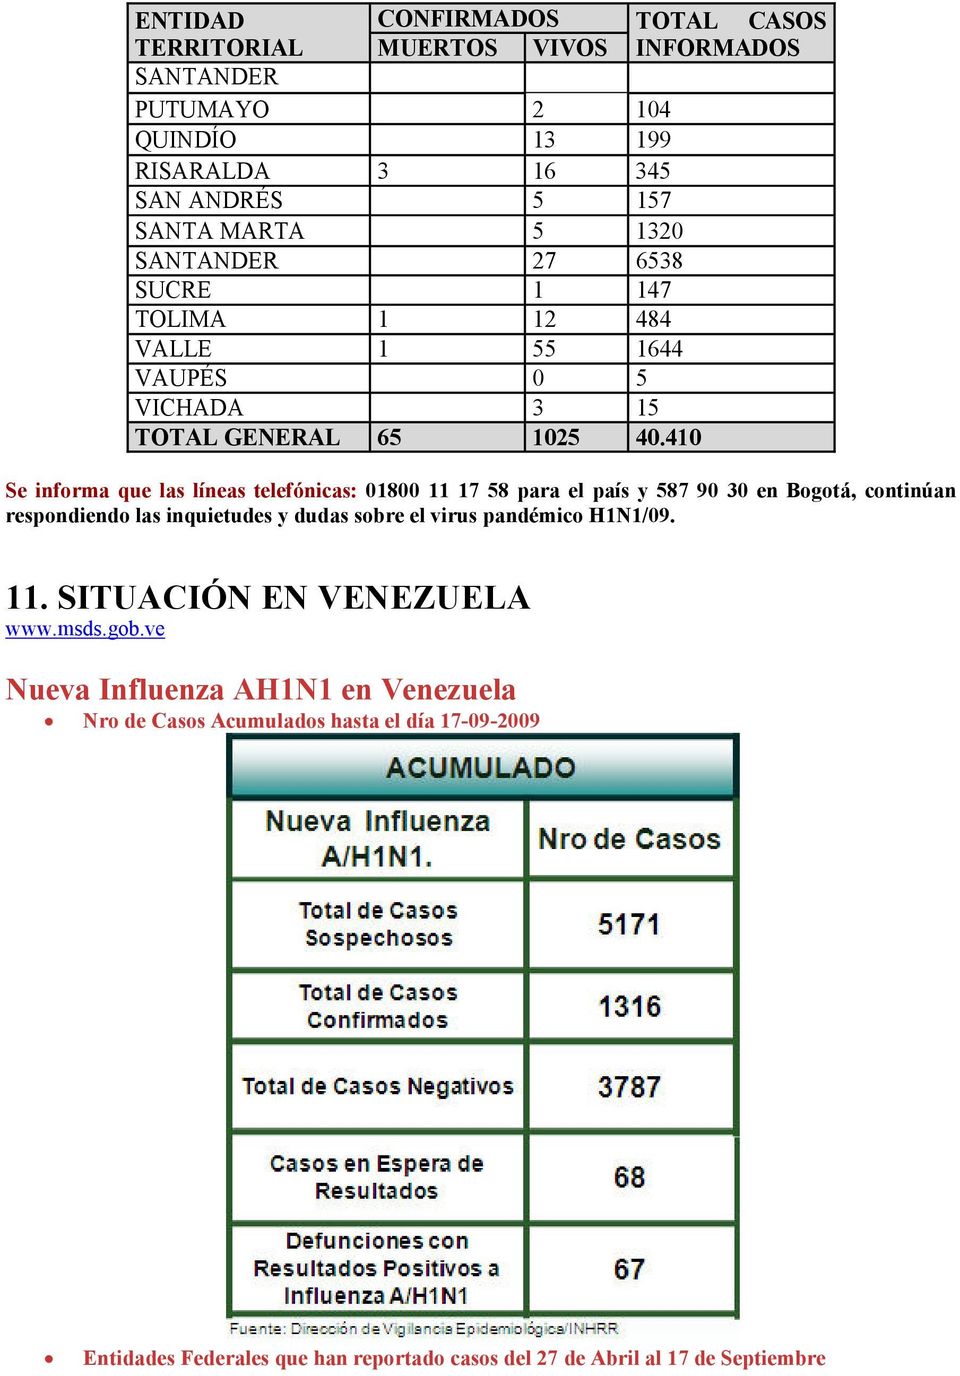 410 Se informa que las líneas telefónicas: 01800 11 17 58 para el país y 587 90 30 en Bogotá, continúan respondiendo las inquietudes y dudas sobre el virus